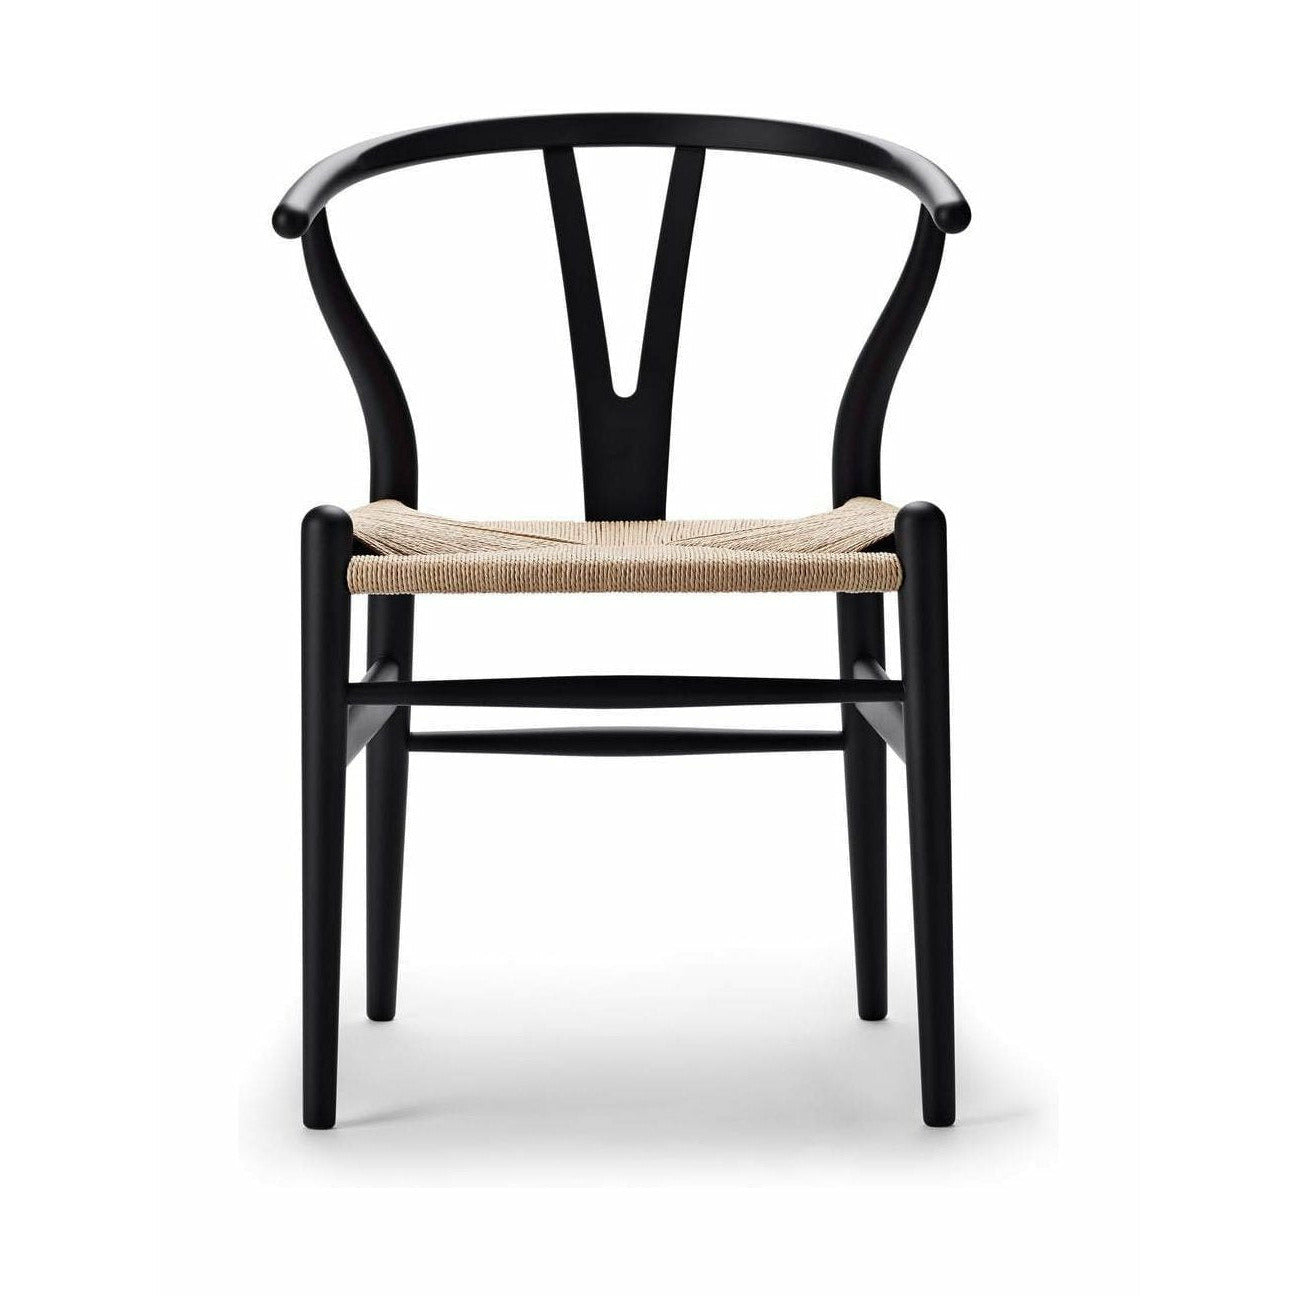 Carl Hansen CH24 Wishbone krzesło specjalne, edycja specjalna Beech, Soft Black